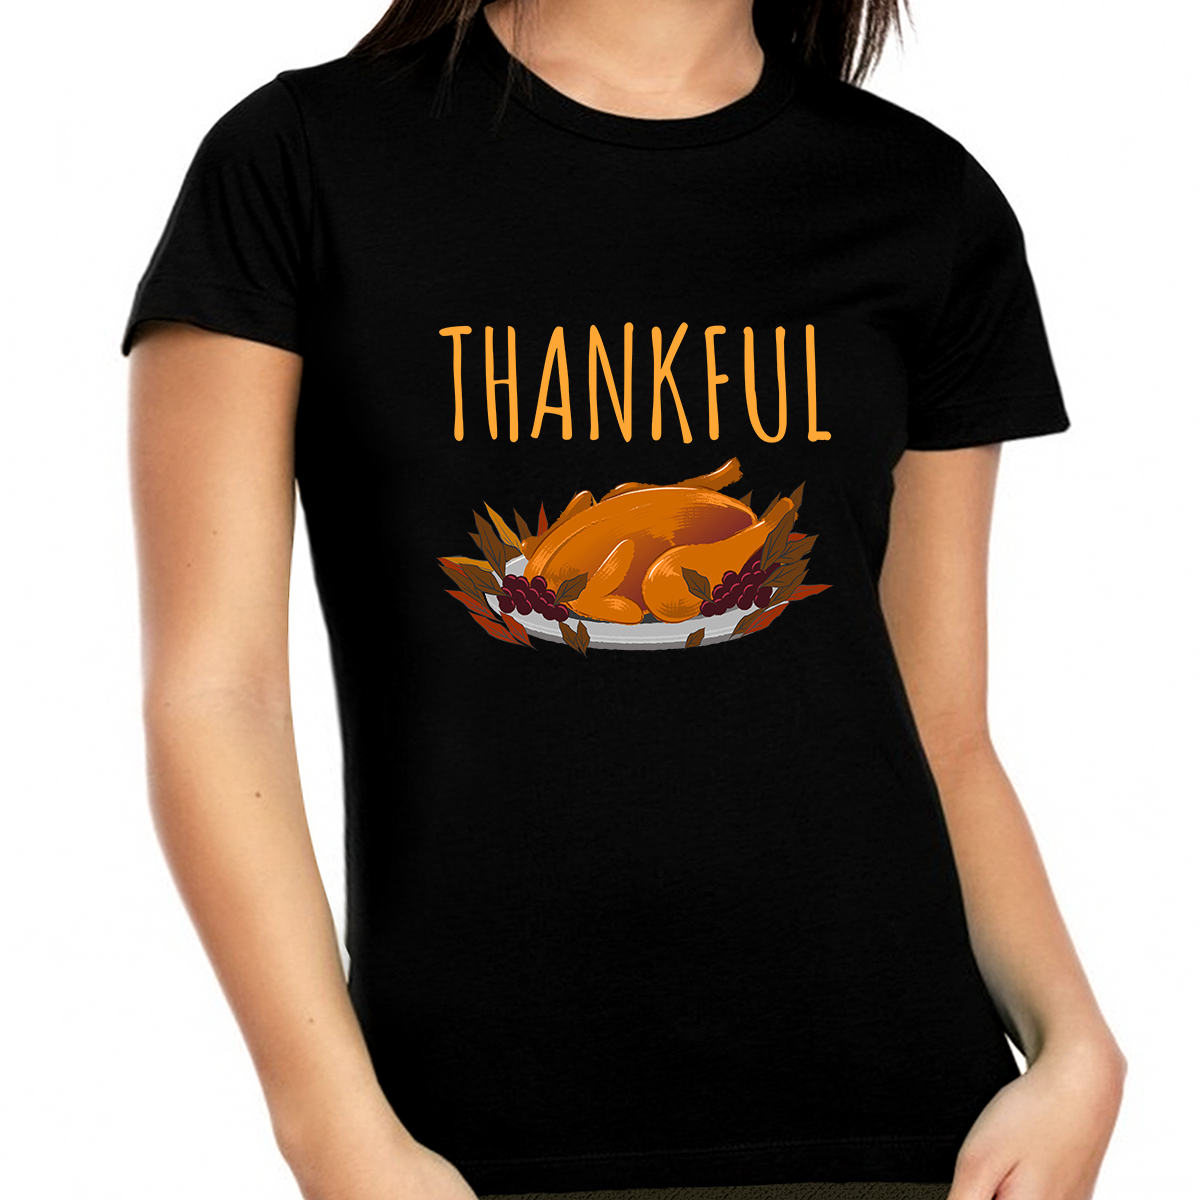 Womens Thanksgiving Shirt Turkey Shirt Fall Shirts Women 1X 2X 3X 4X 5X Plus Size Thankful Shirts for Women